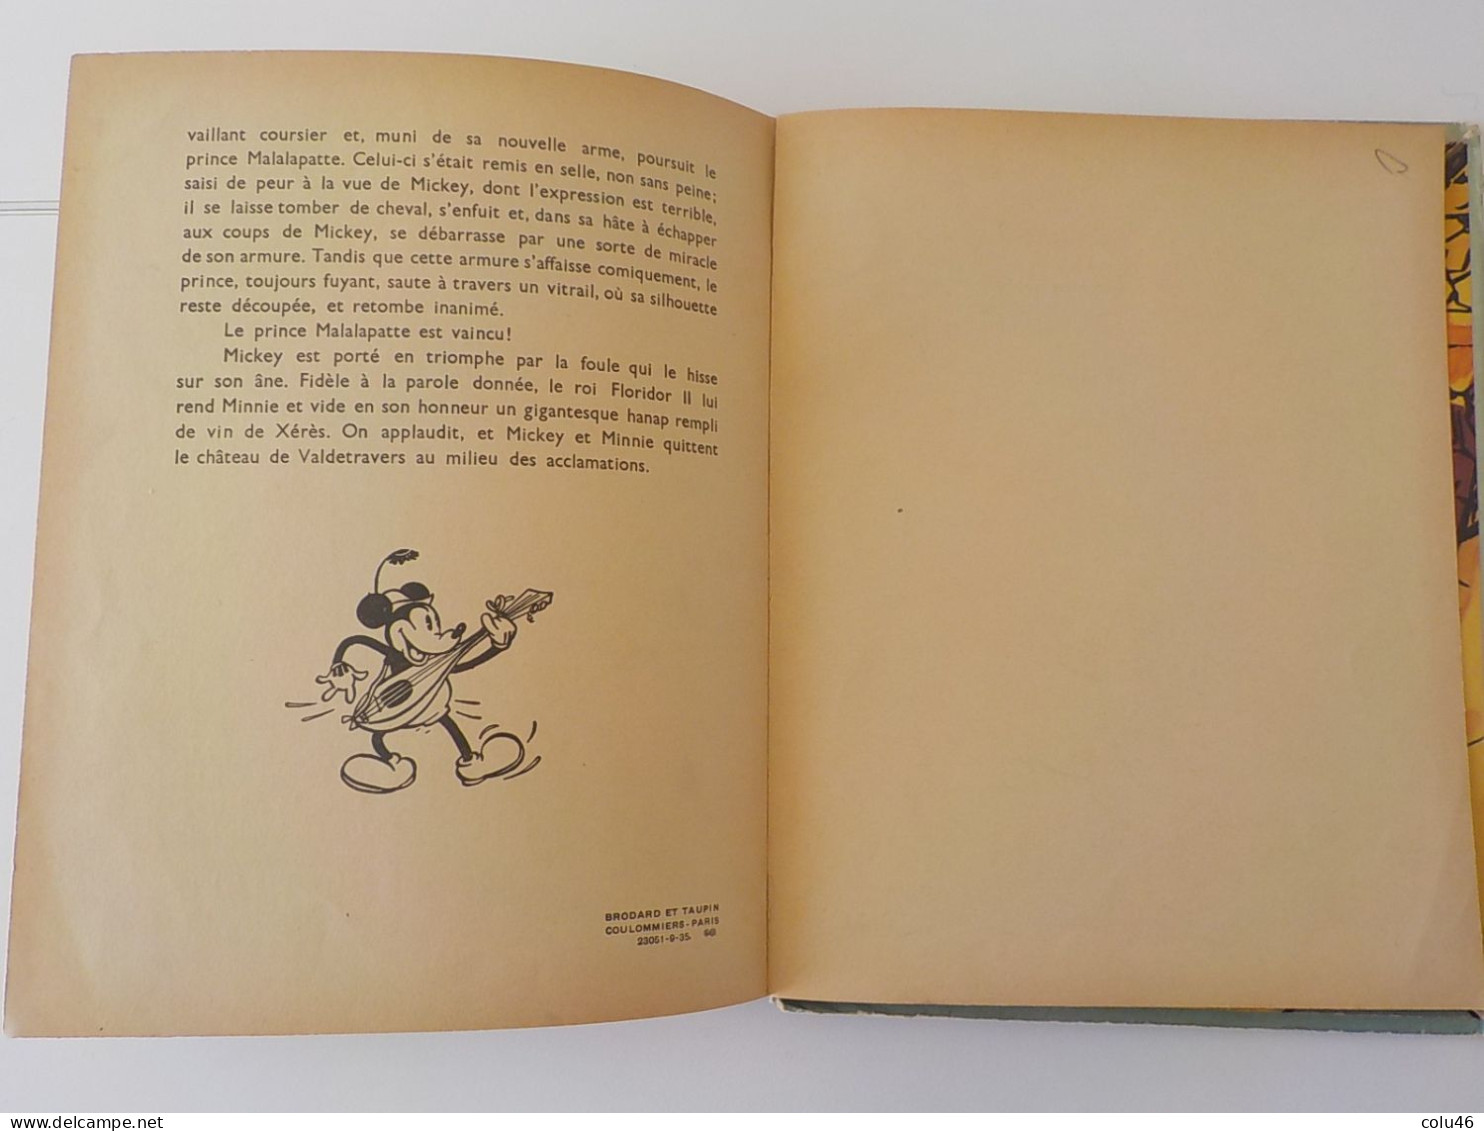 1935 Livre album pop-up Les albums Hop-La! Walt Disney Mickey et le Prince Malalapatte Hachette Mickey Mouse